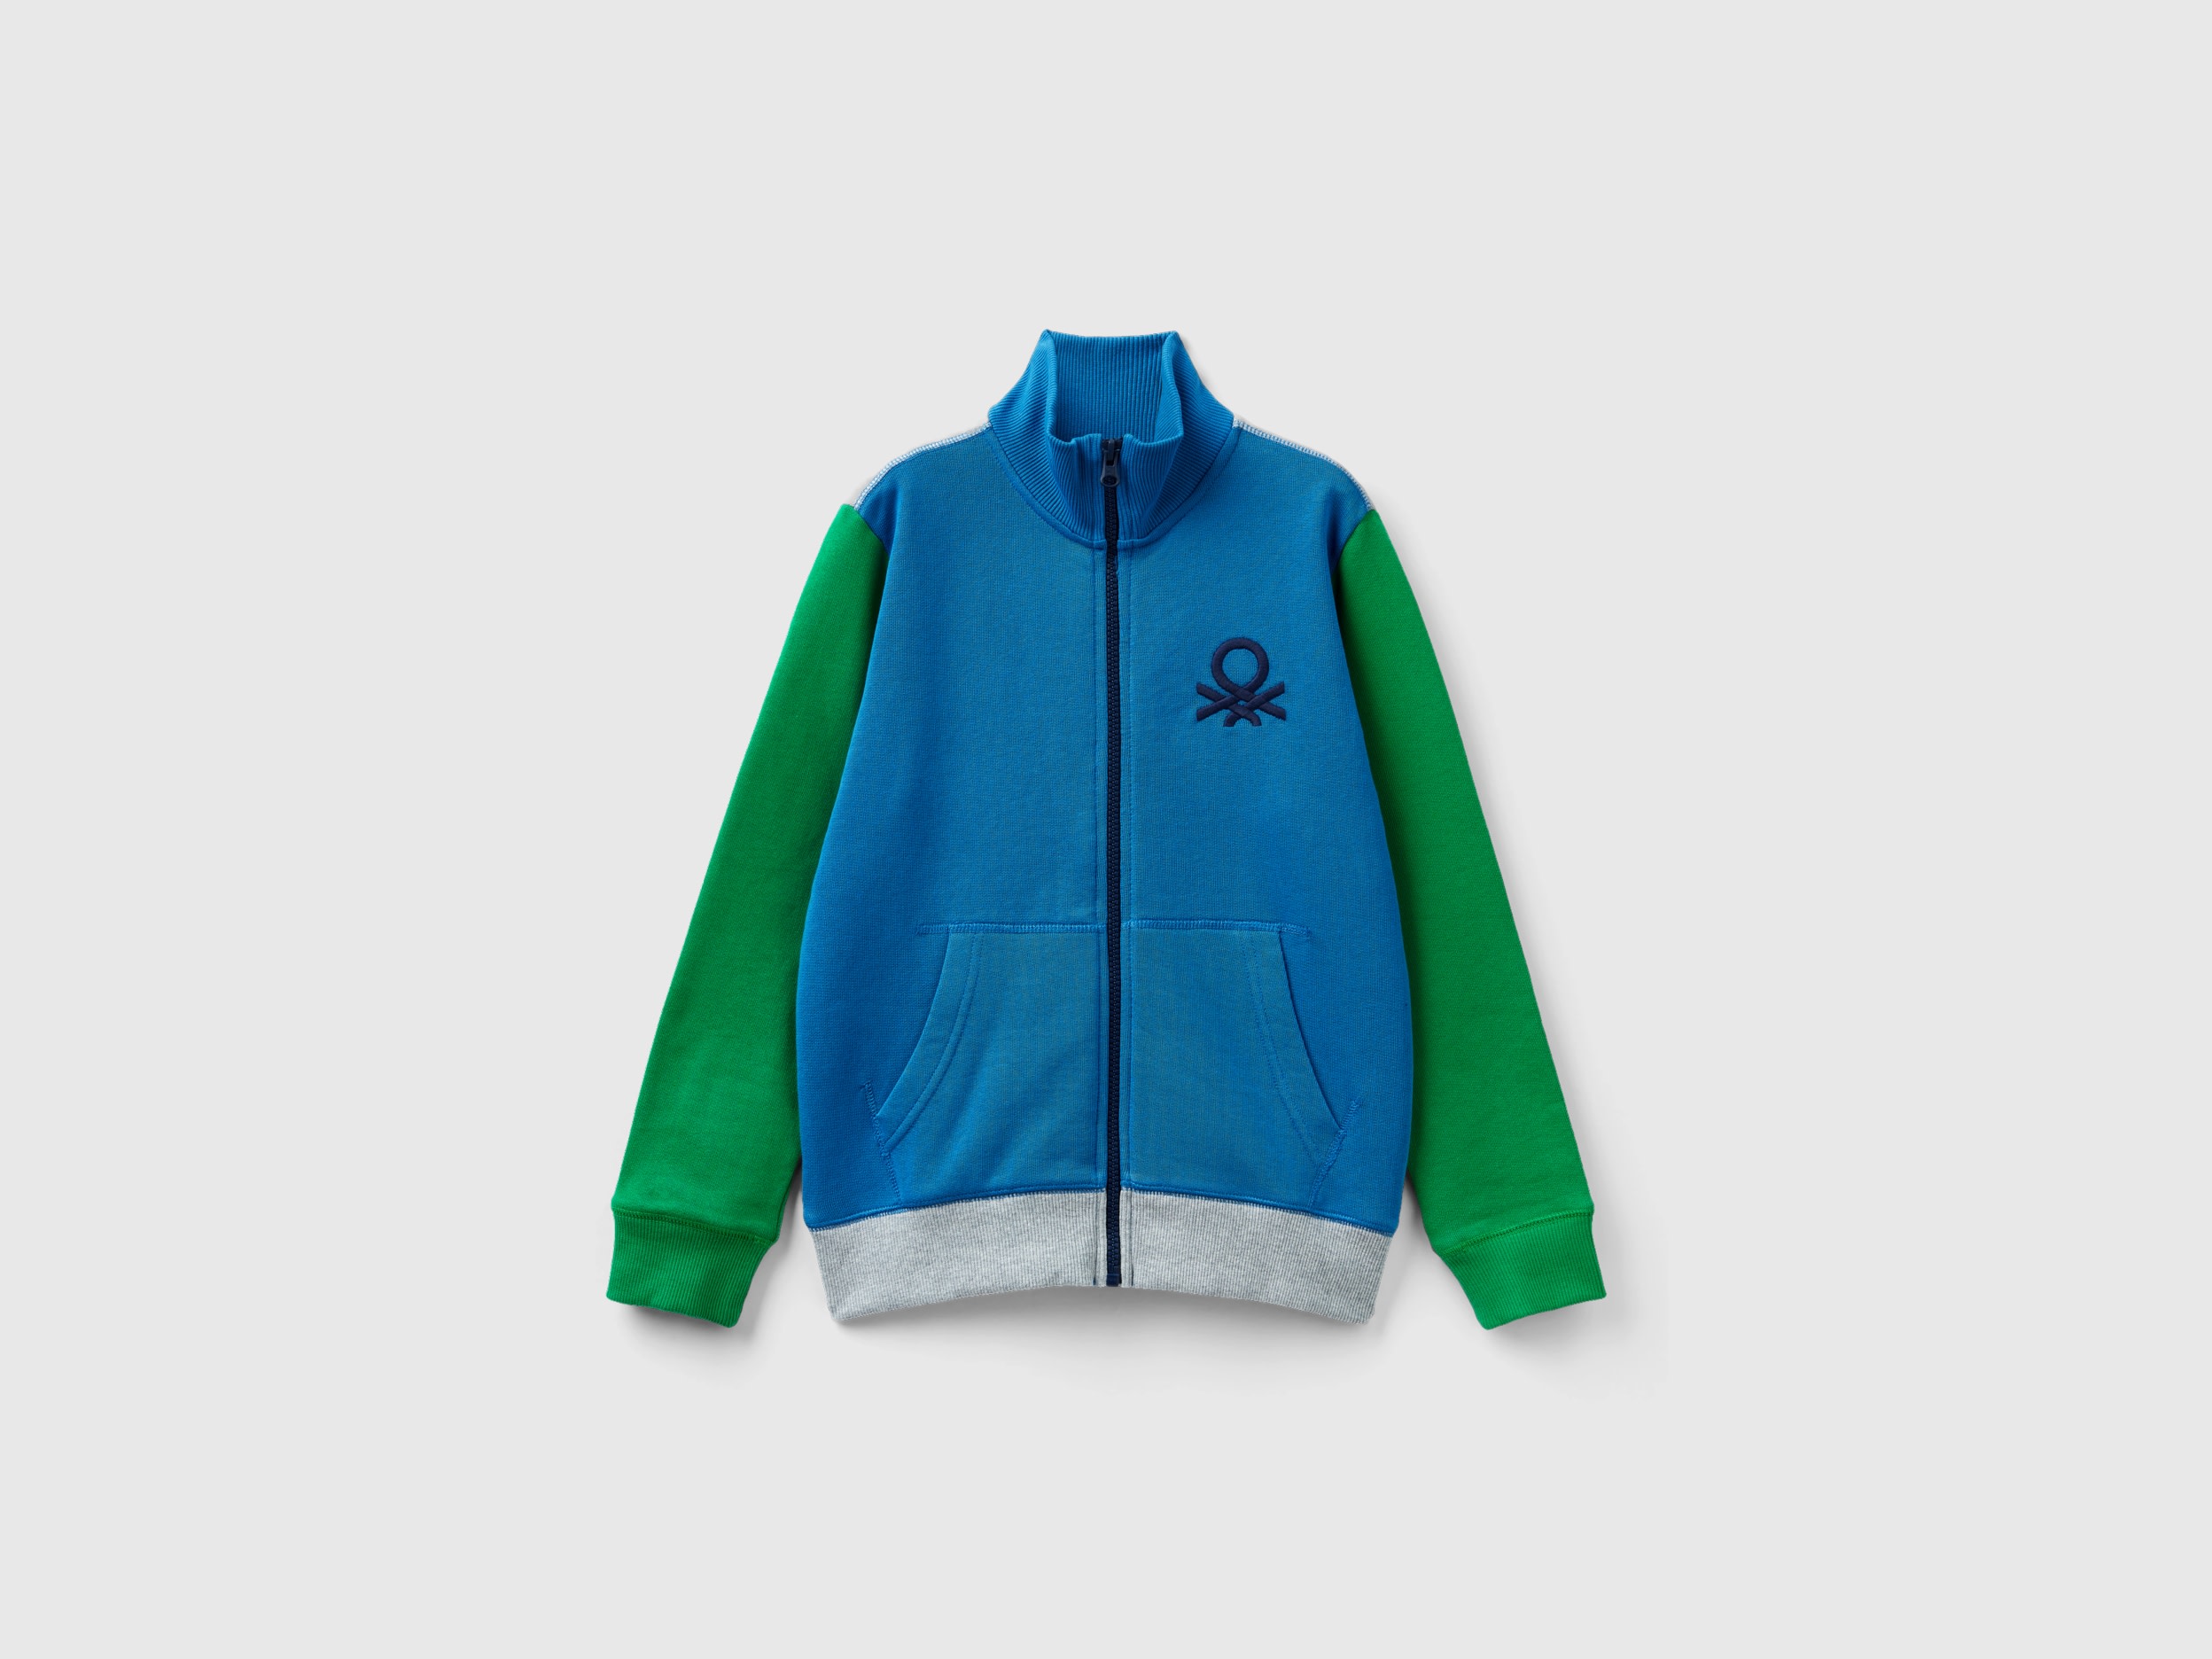 Benetton, Pure Cotton Sweatshirt With Zipper, size L, Multi-color, Kids